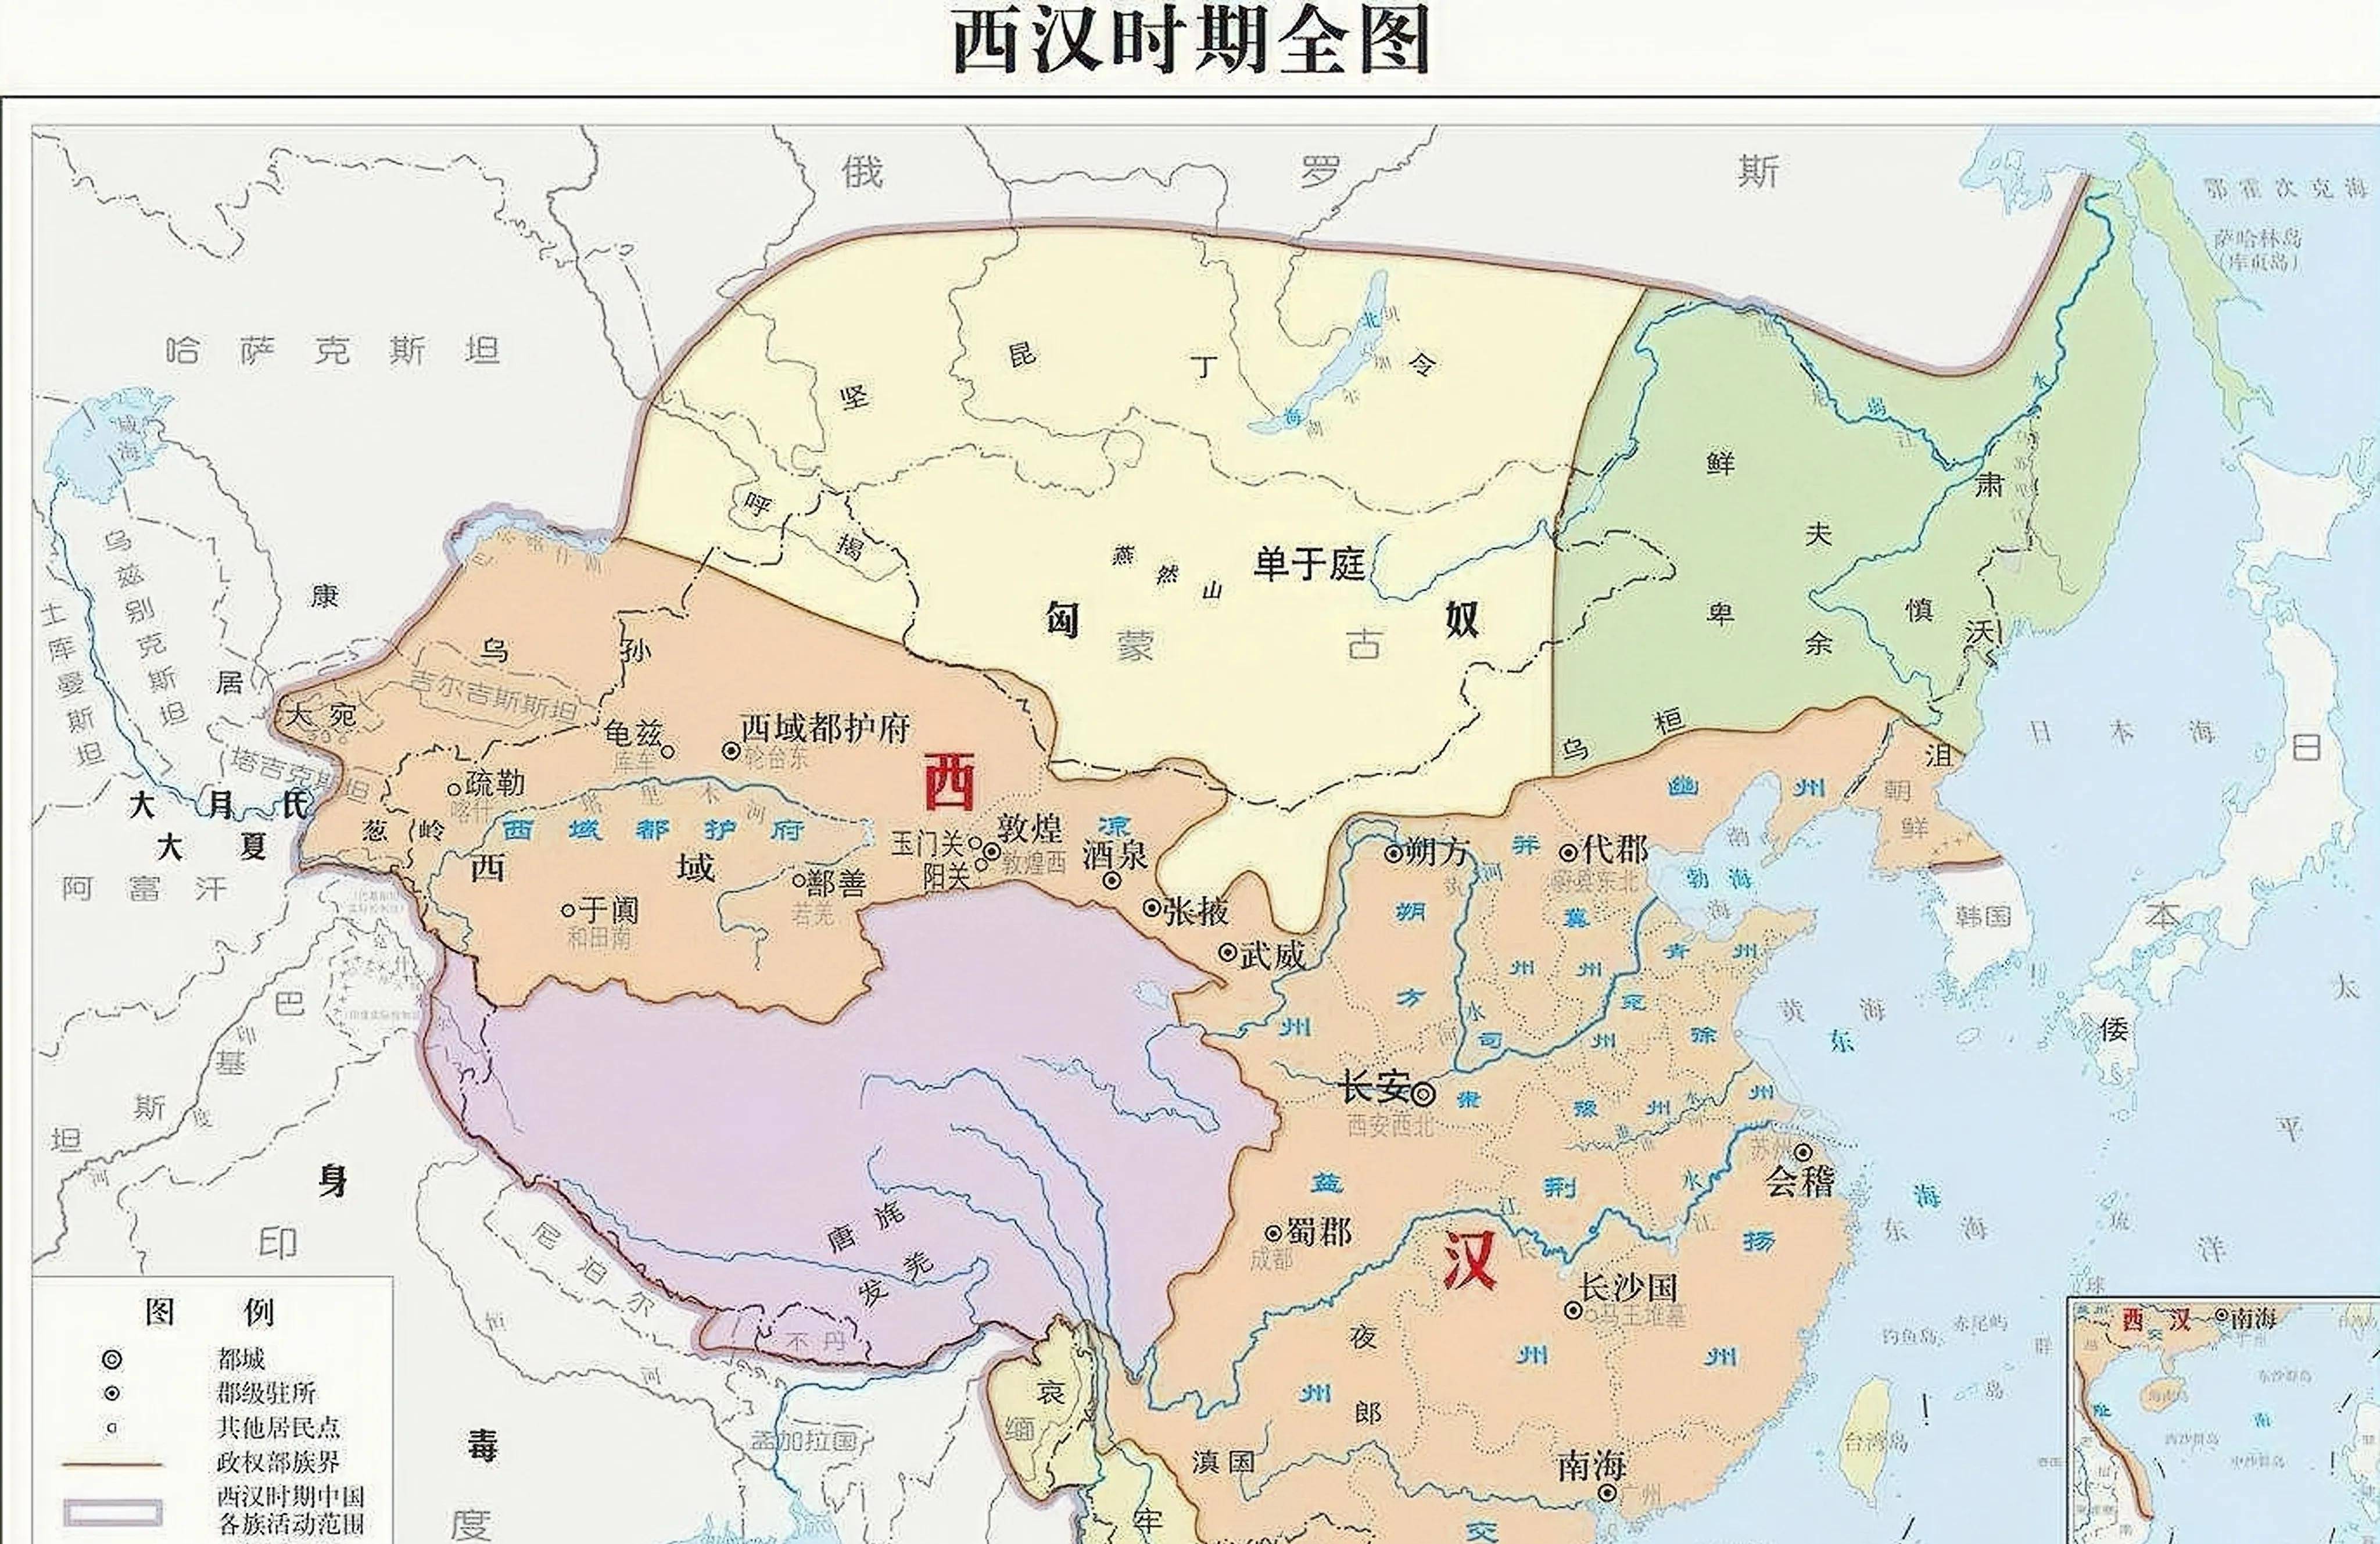 看遍华夏5千年疆域变迁史,汉唐霸气,元朝真牛,大清不甘落后